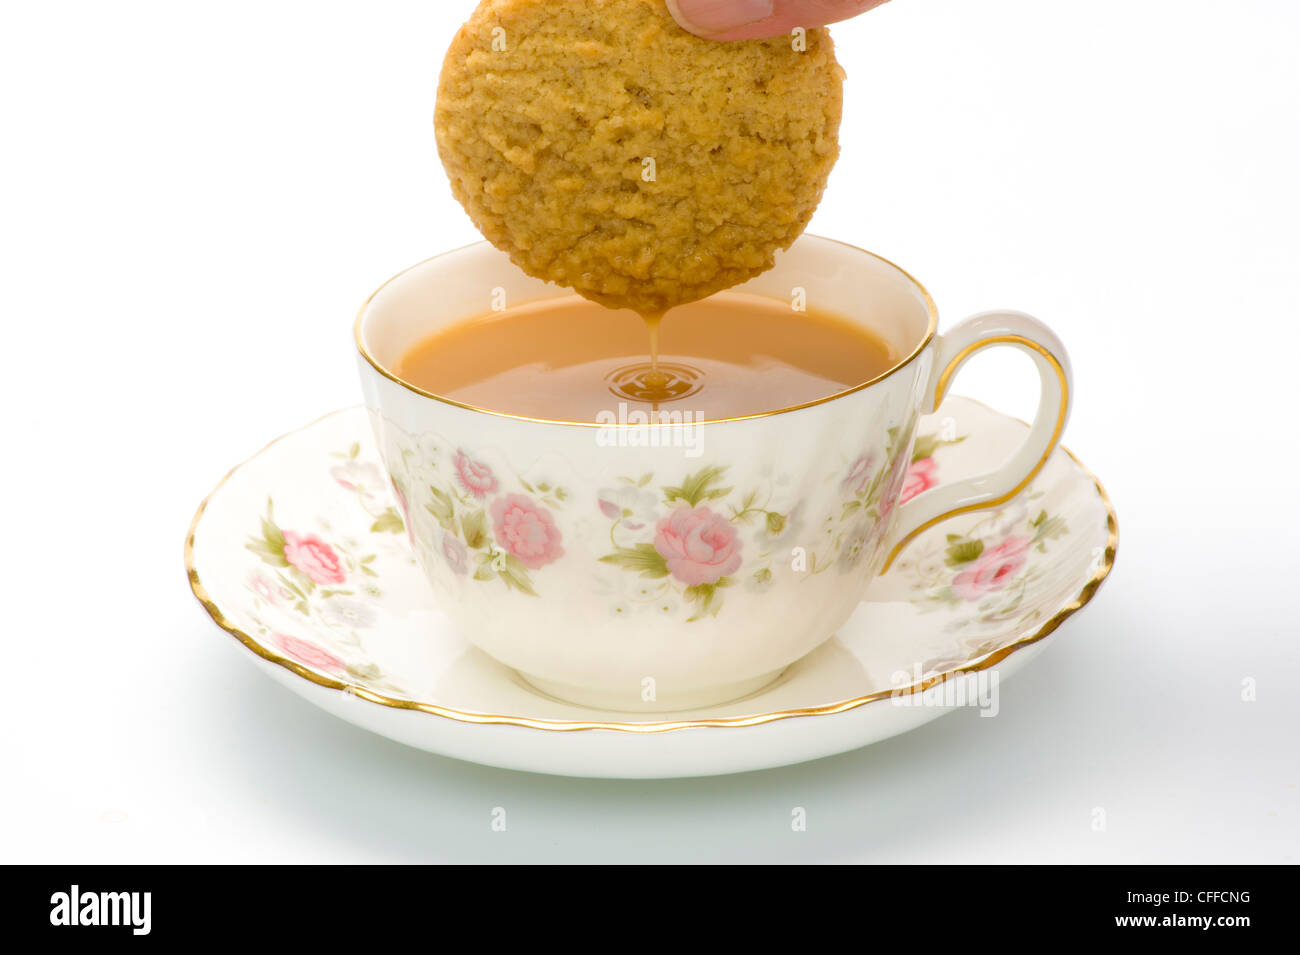 Biscuit tropft mit Flüssigkeit, wurde in eine tasse mit Tee eingetaucht. Stockfoto